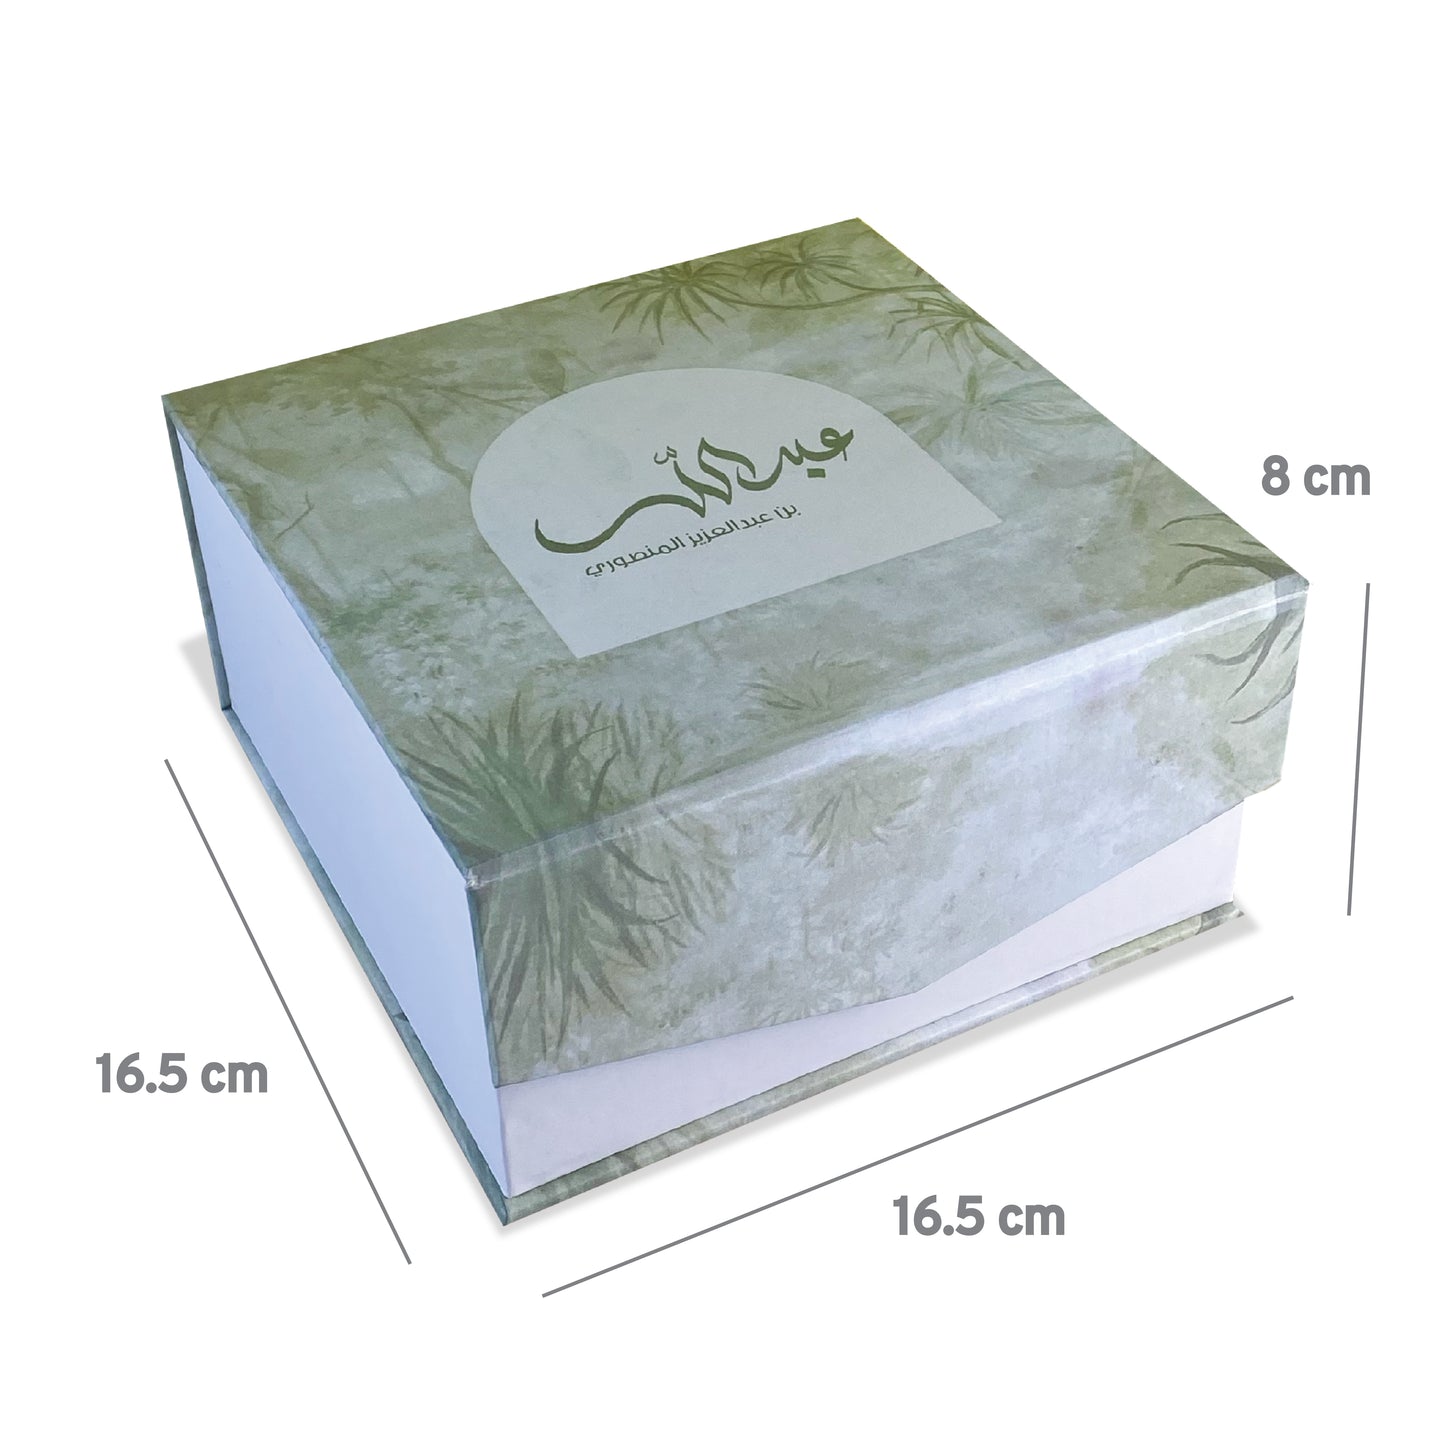 RIGID BOX 16.5x16.5x8 cm